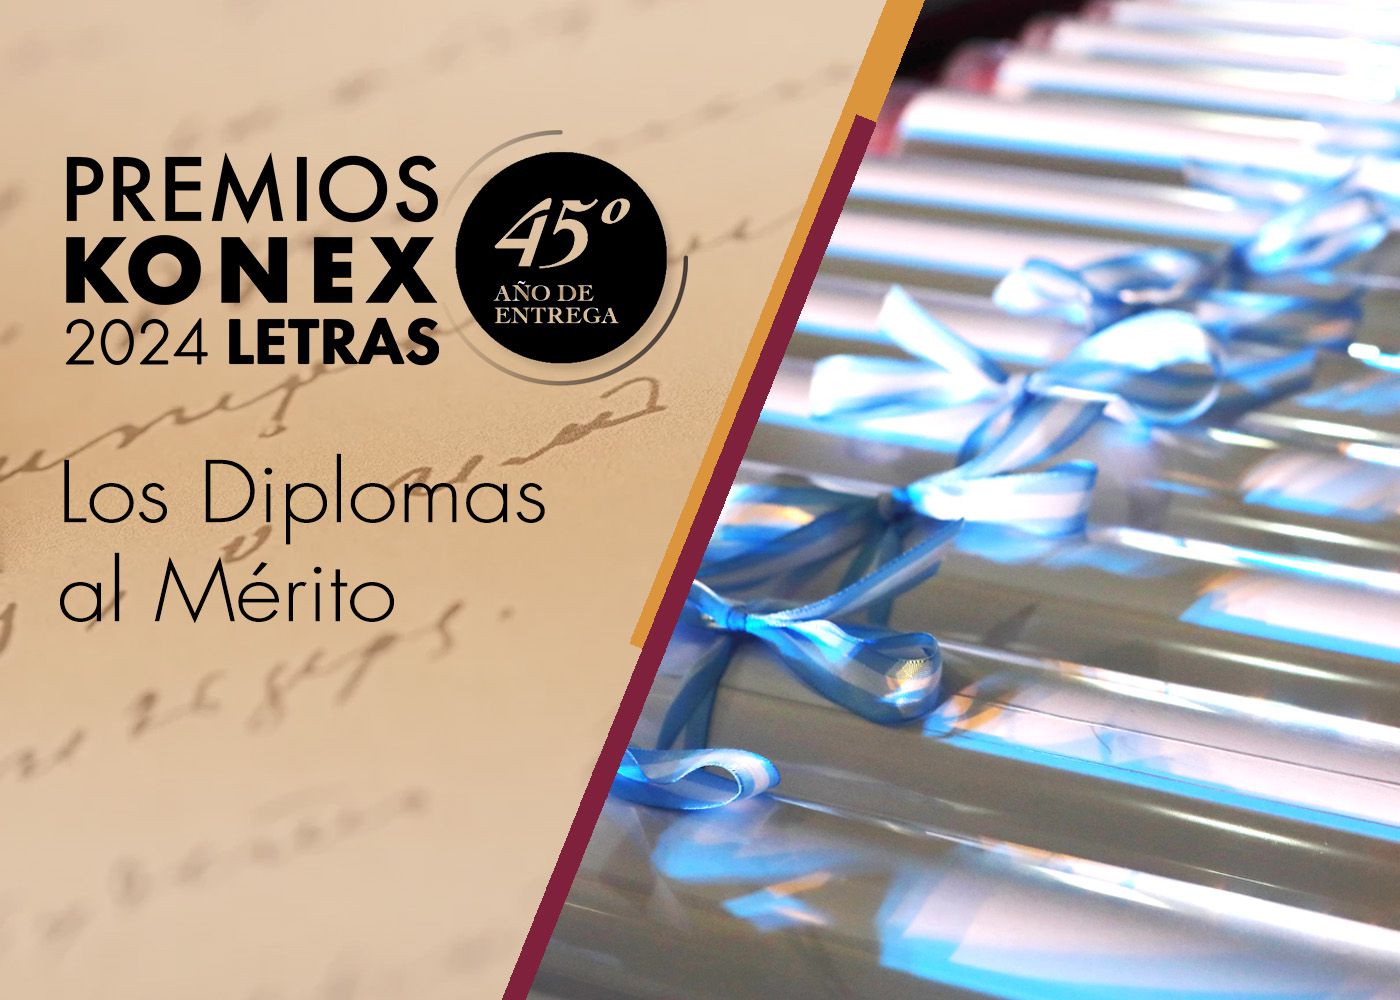 Premios Konex 2024: Letras. Conozca a los ganadores de los Diplomas al Mérito.